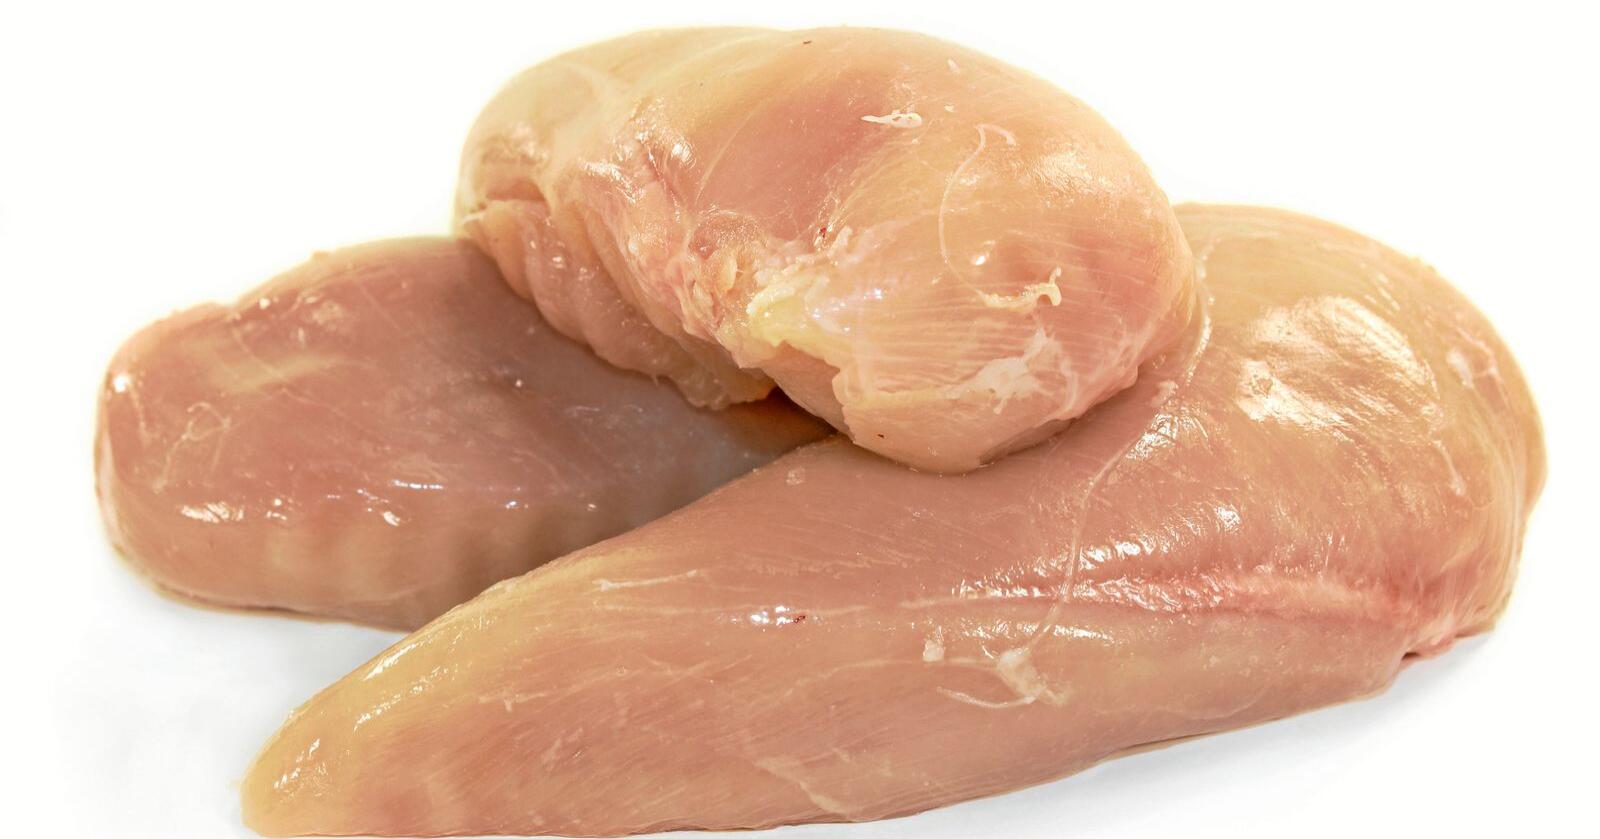 USA vil eksportere klorvasket kylling til Storbritannia. EU krever at det opprettholder forbud. Foto: Colourbox